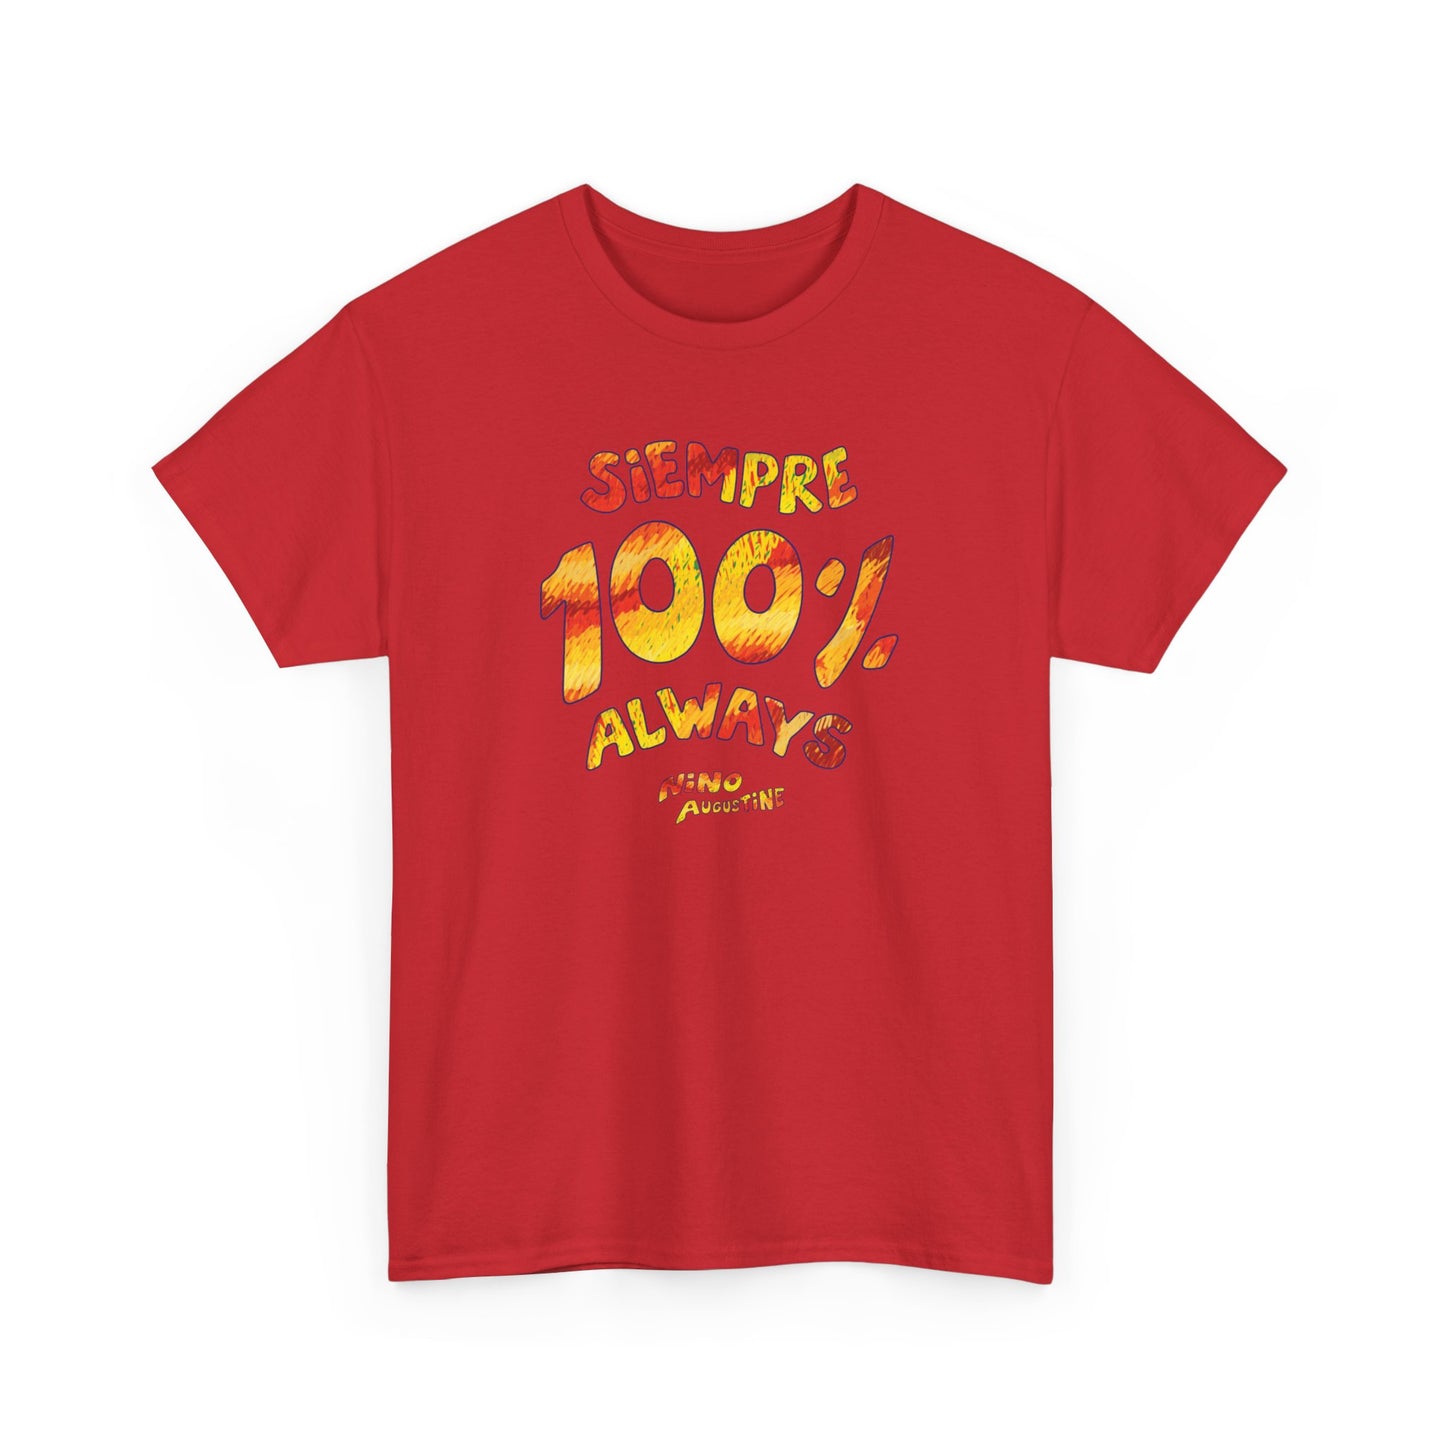 100% Always/Siempre T-Shirt